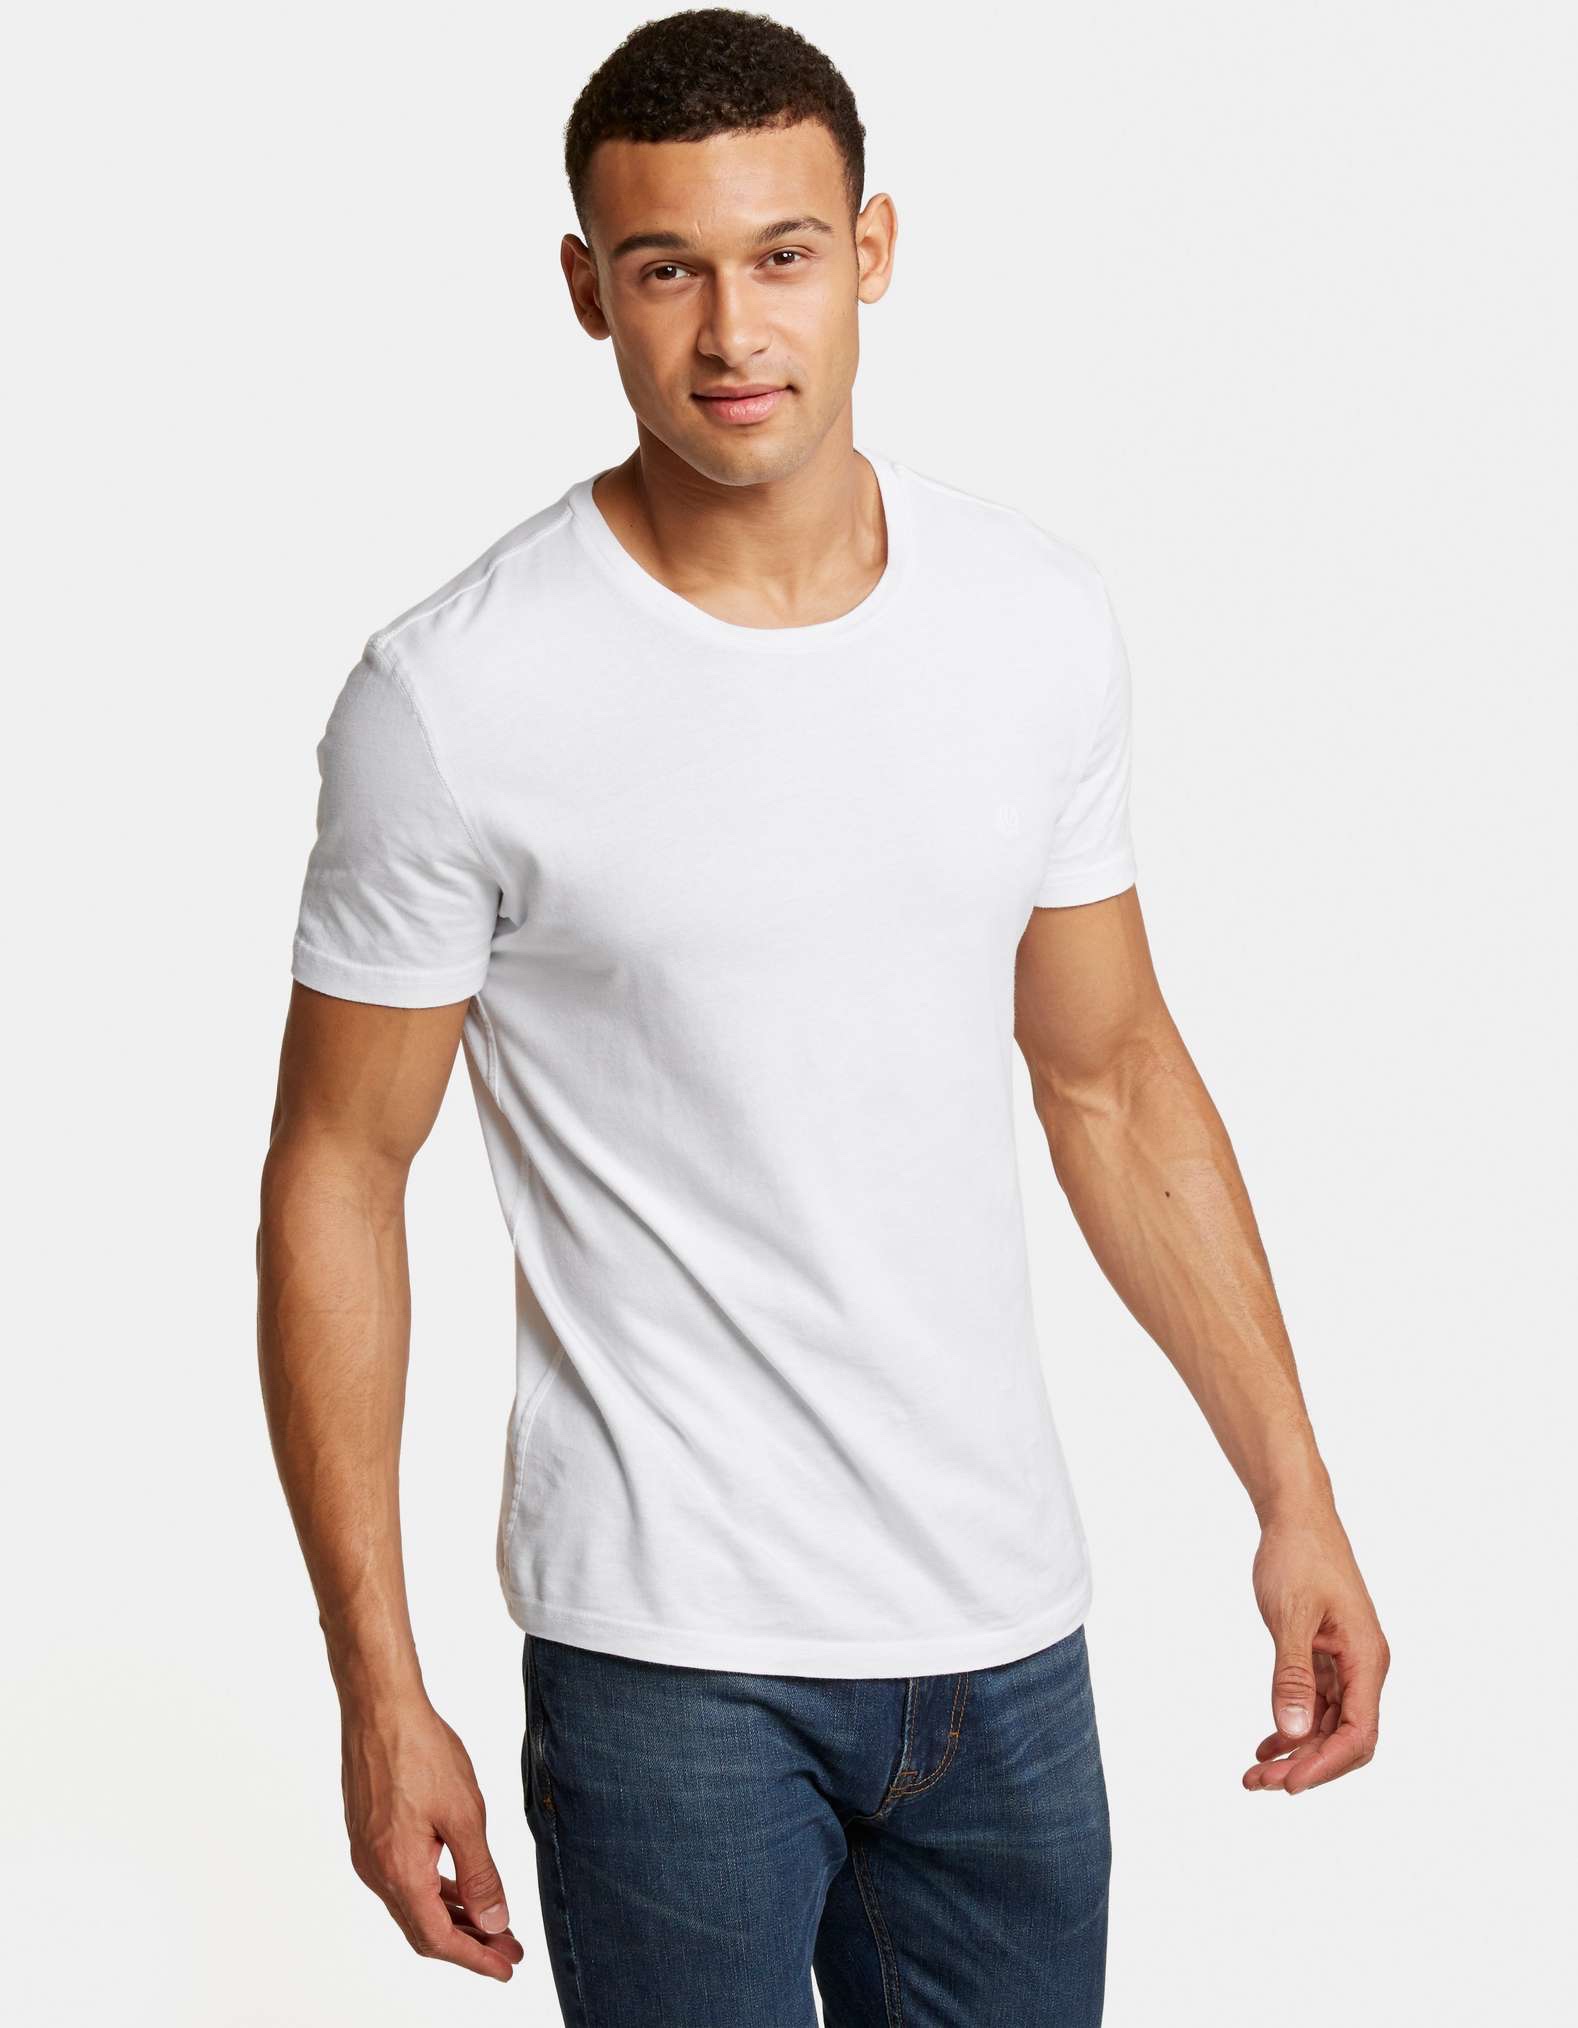 5 Best White T-Shirts for Men-2019 — dapper & groomed